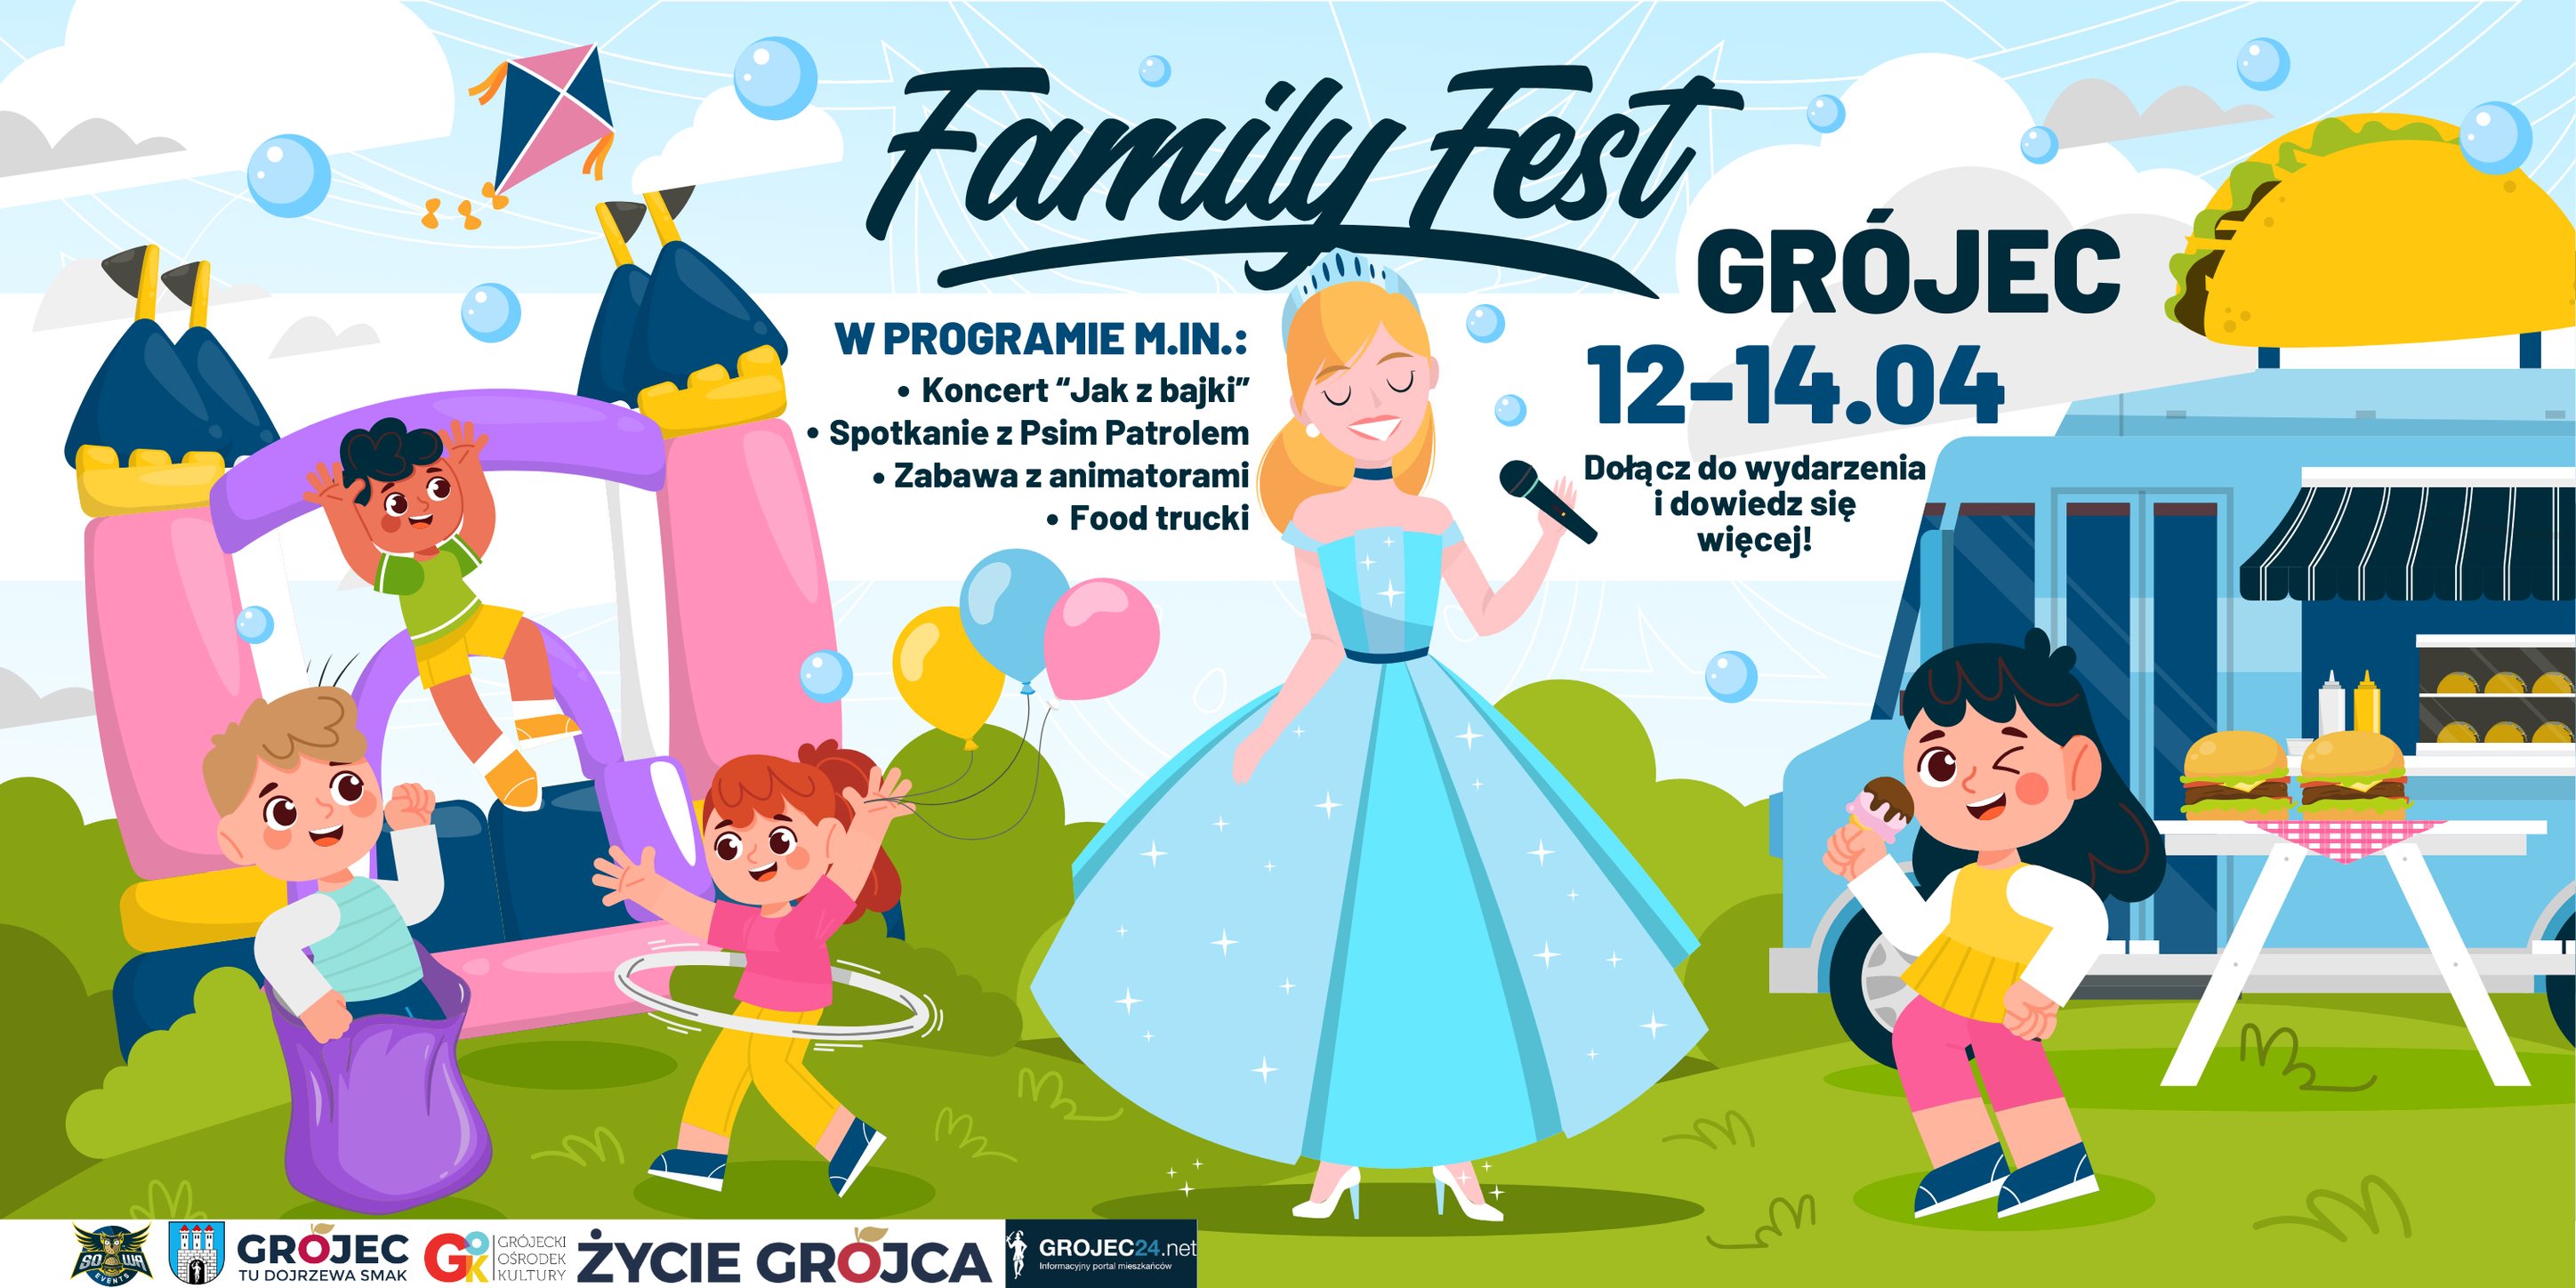  FAMILY FEST - Grójec zaprasza na festiwal smaku i zabawy!